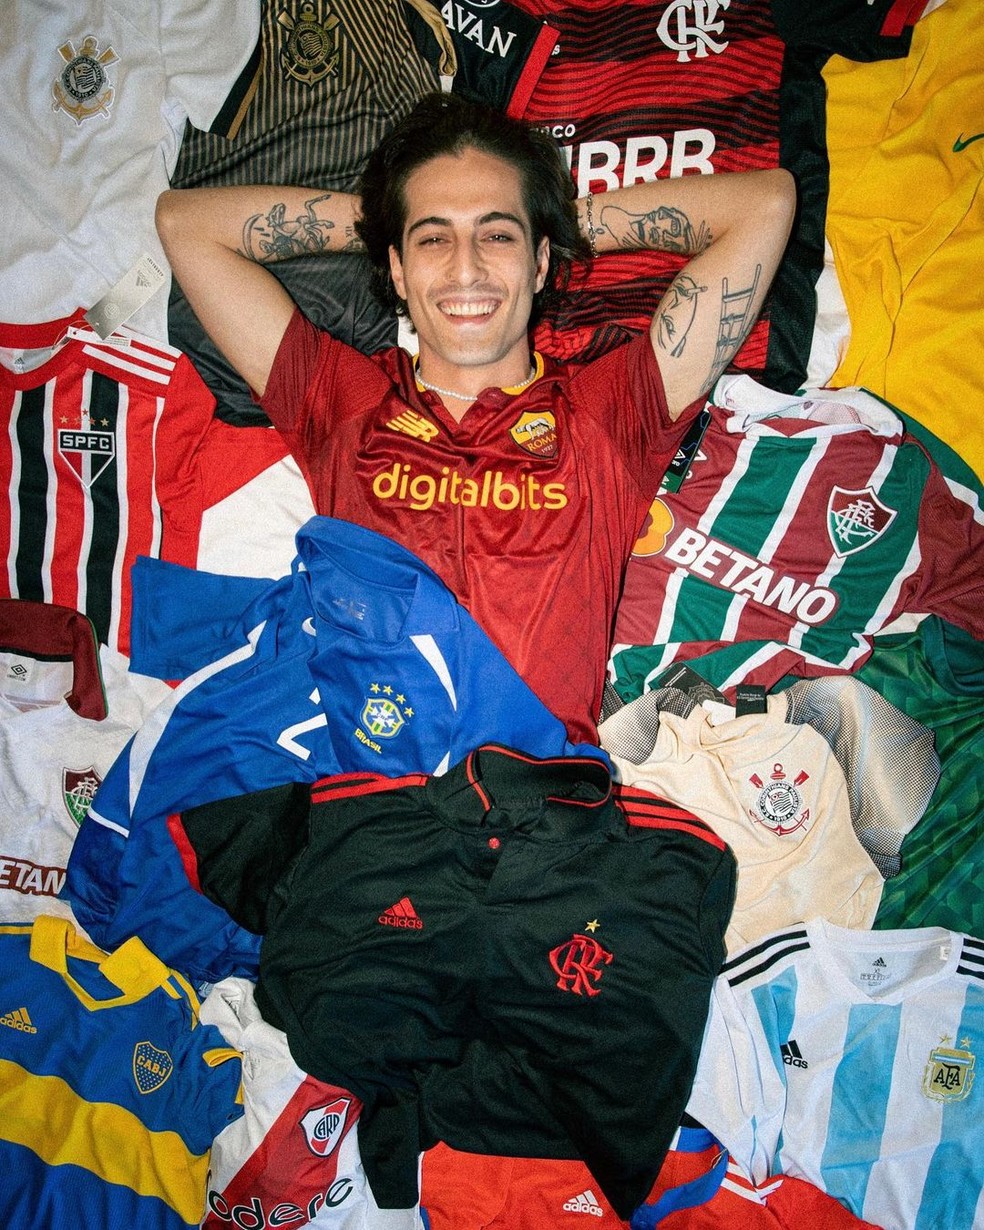 Damiano David com coleção de camisas de clubes brasileiros e latinos — Foto: Divulgação Instagram